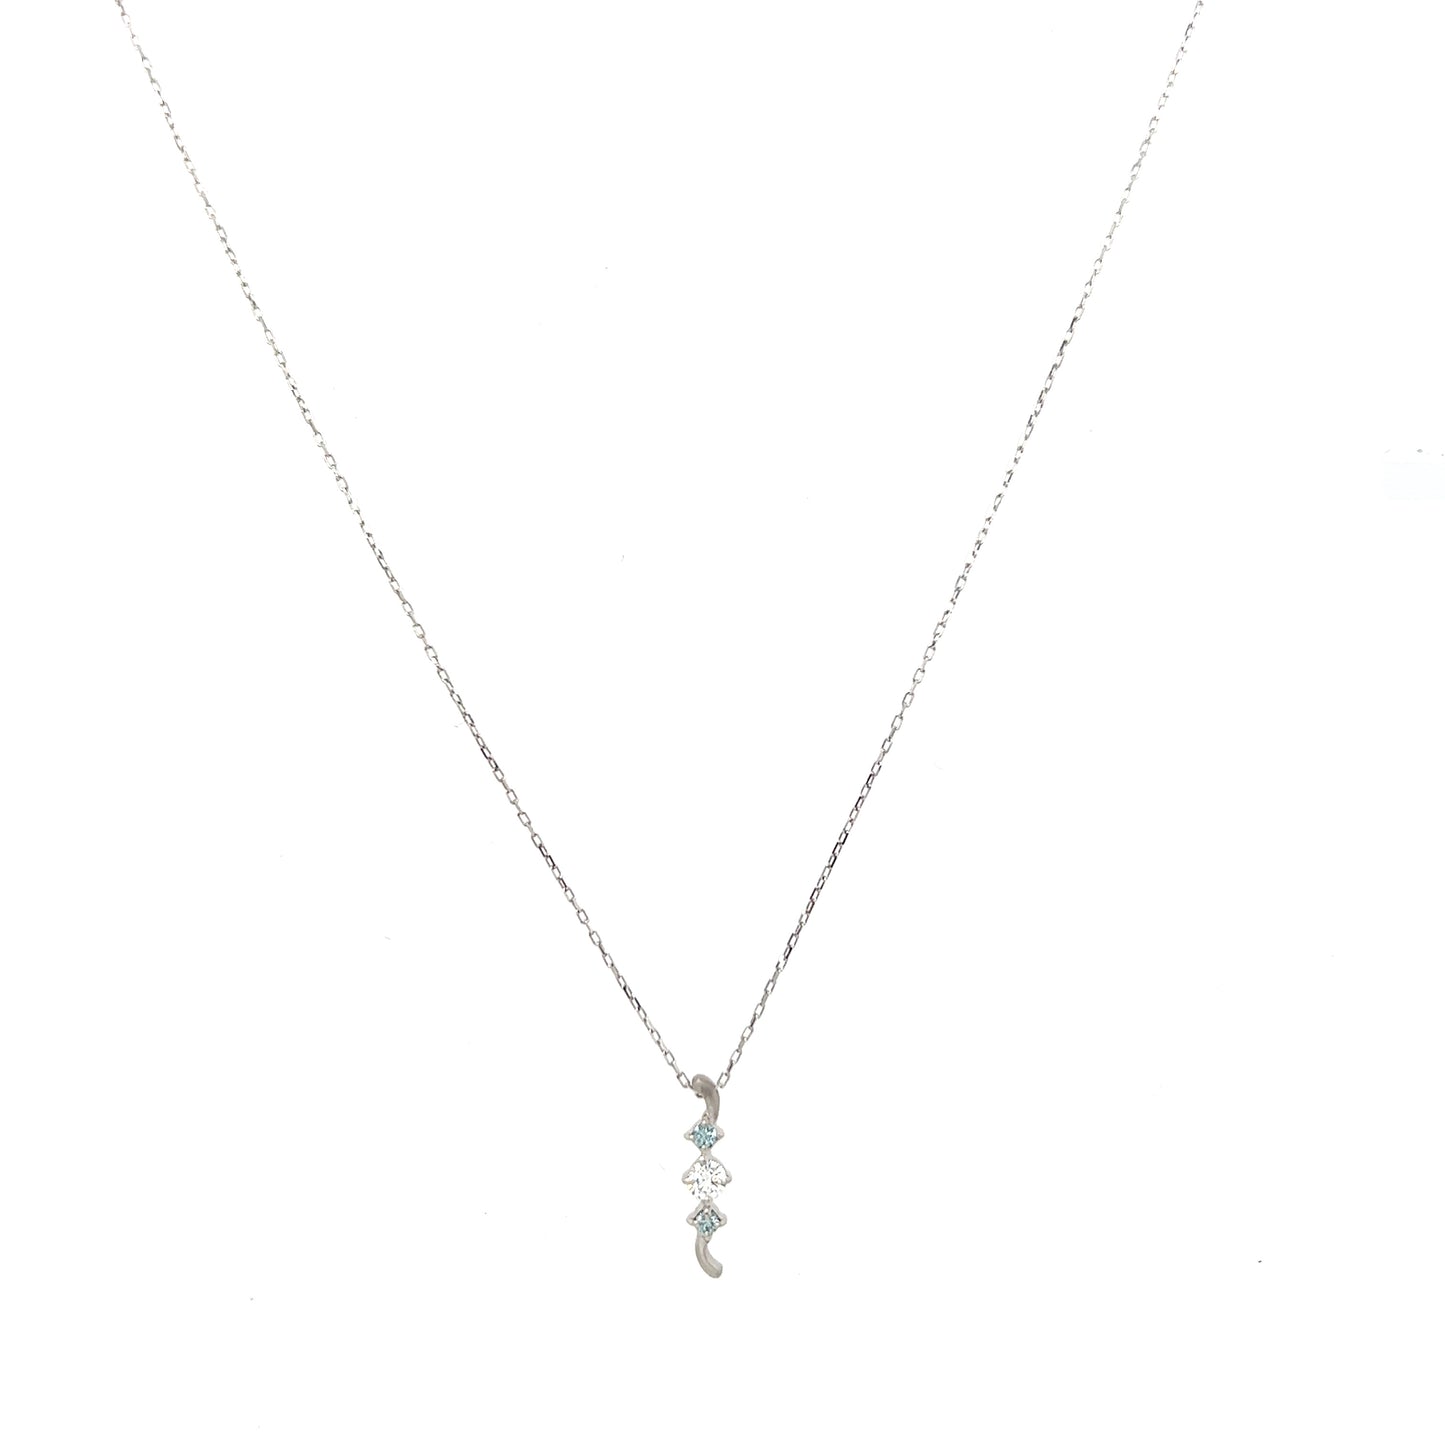 Shimmer Diamond necklace